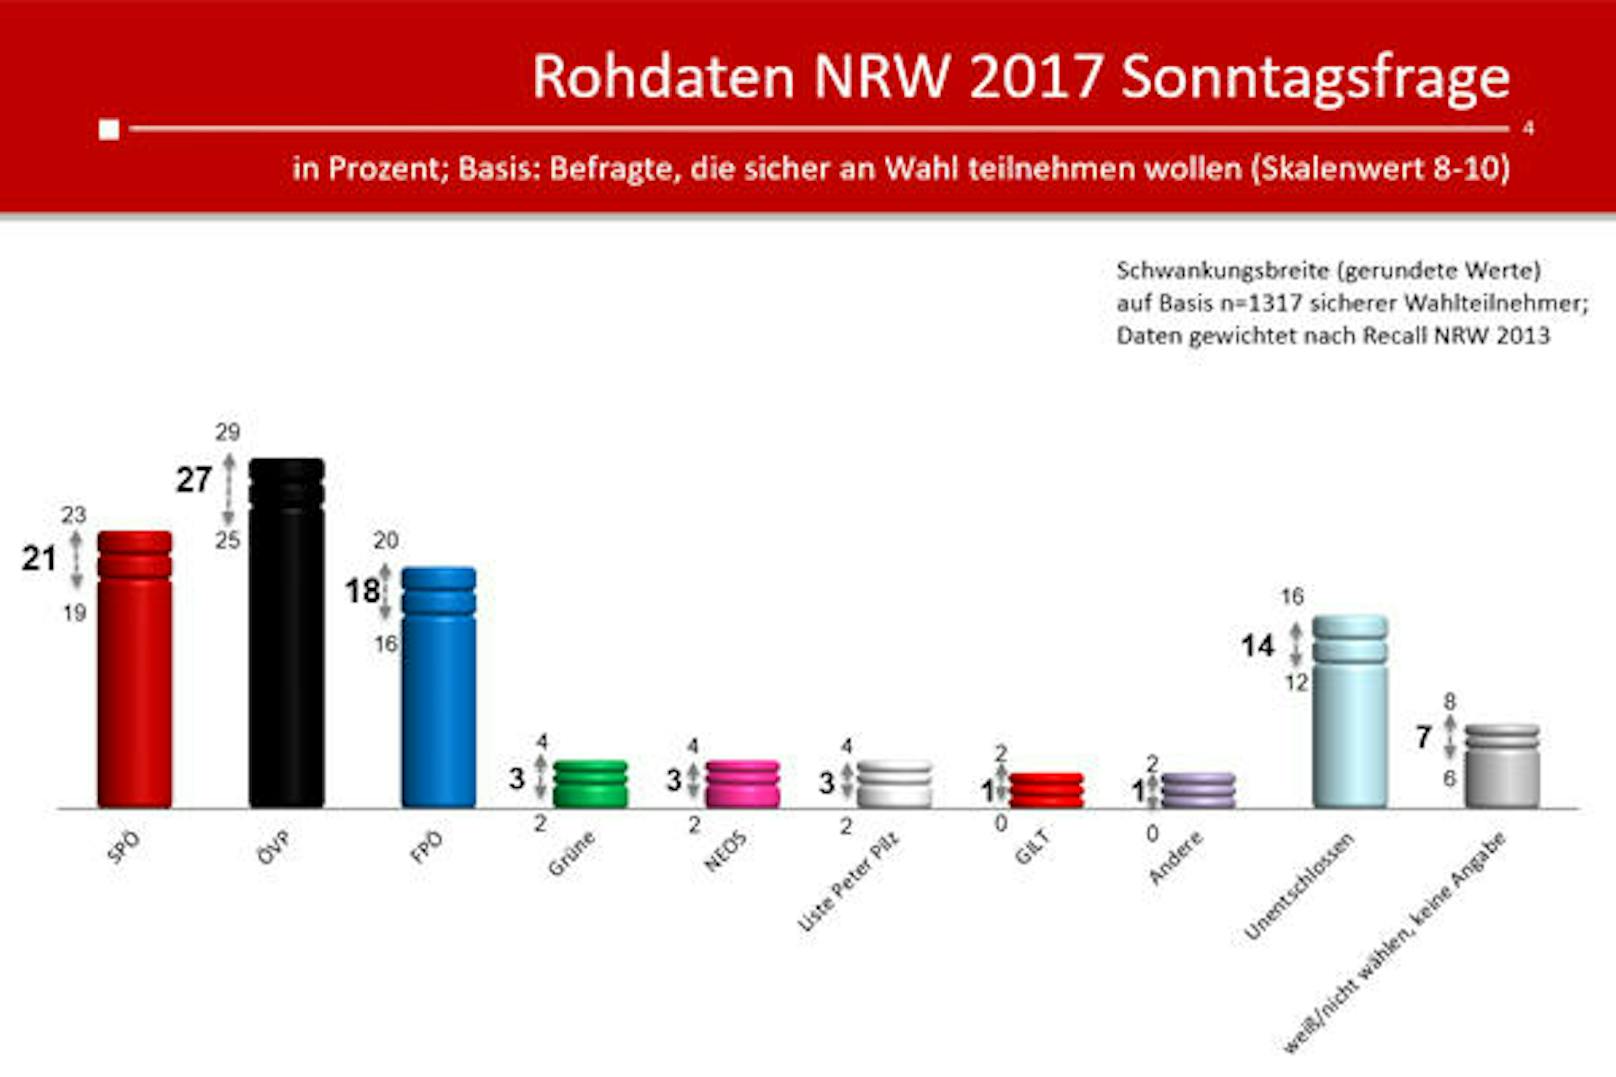 Die ÖVP hat einen signifikanten Vorsprung auf SPÖ und FPÖ, der Unterschied zwischen SPÖ und FPÖ dagegen ist nicht signifikant. Grüne, NEOS und PILZ liegen auf einem ähnlichen Niveau. Hier die Rohdaten der Umfrage.